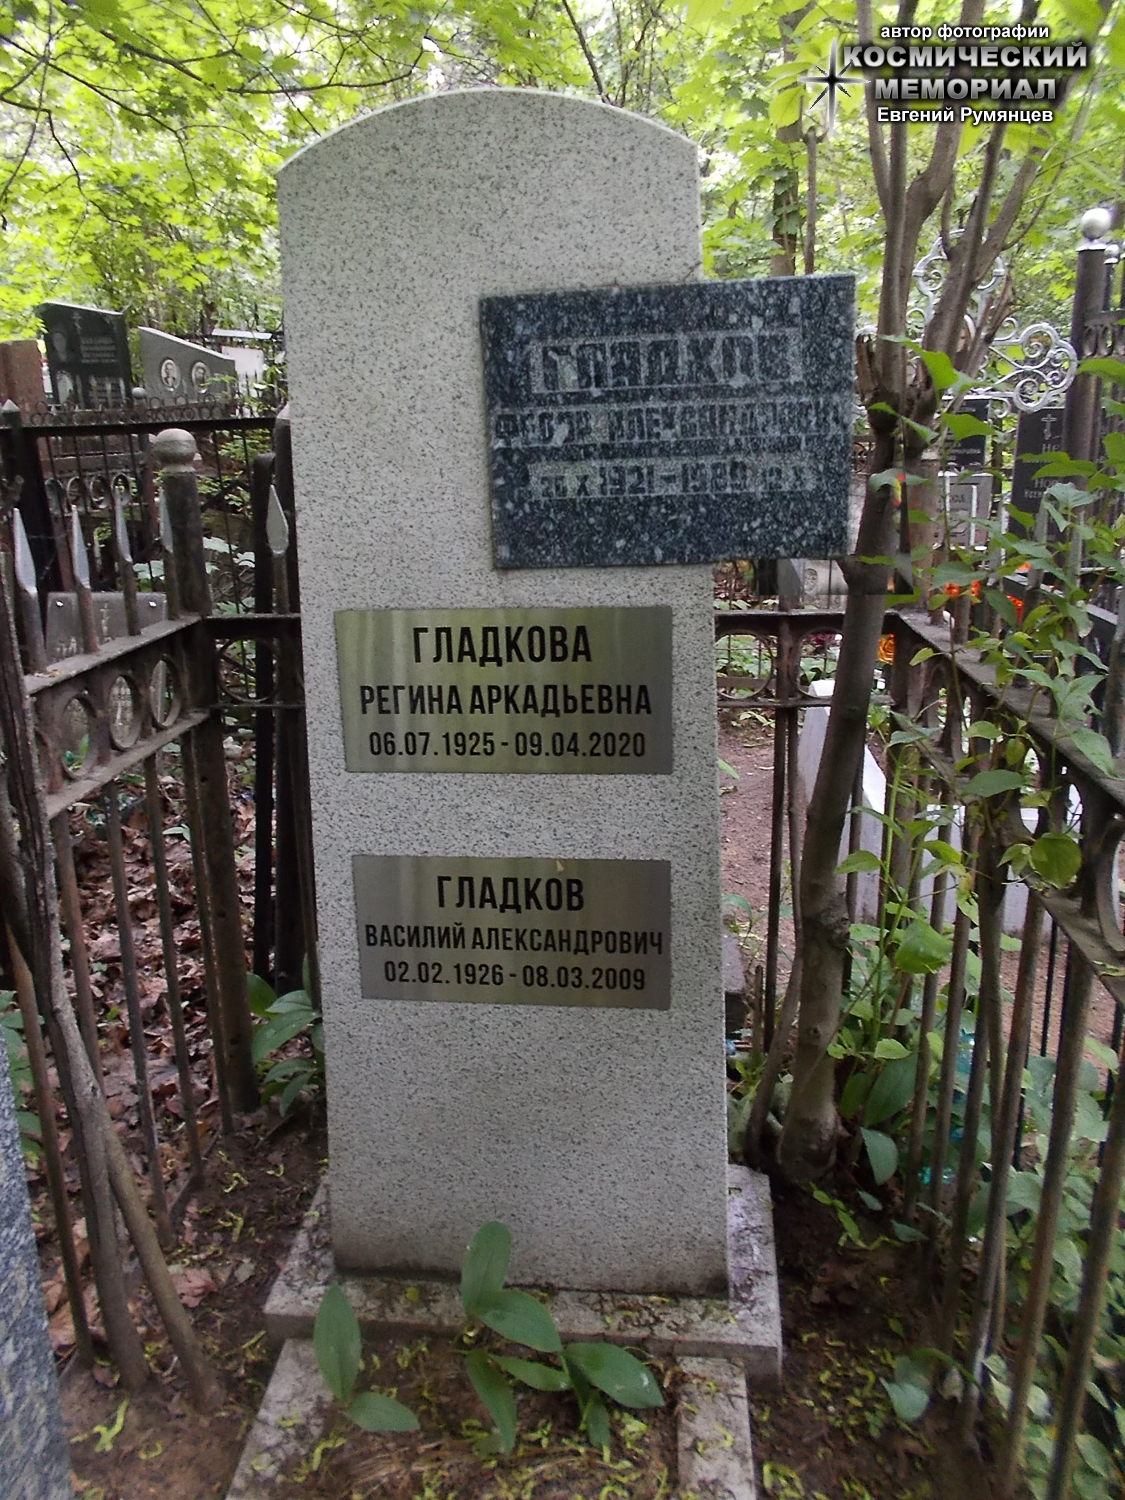 г. Москва, Ваганьковское кладбище (уч. № 55). Надгробие на могилах Ф.А. Гладкова, его супруги и брата (июнь 2021 года)